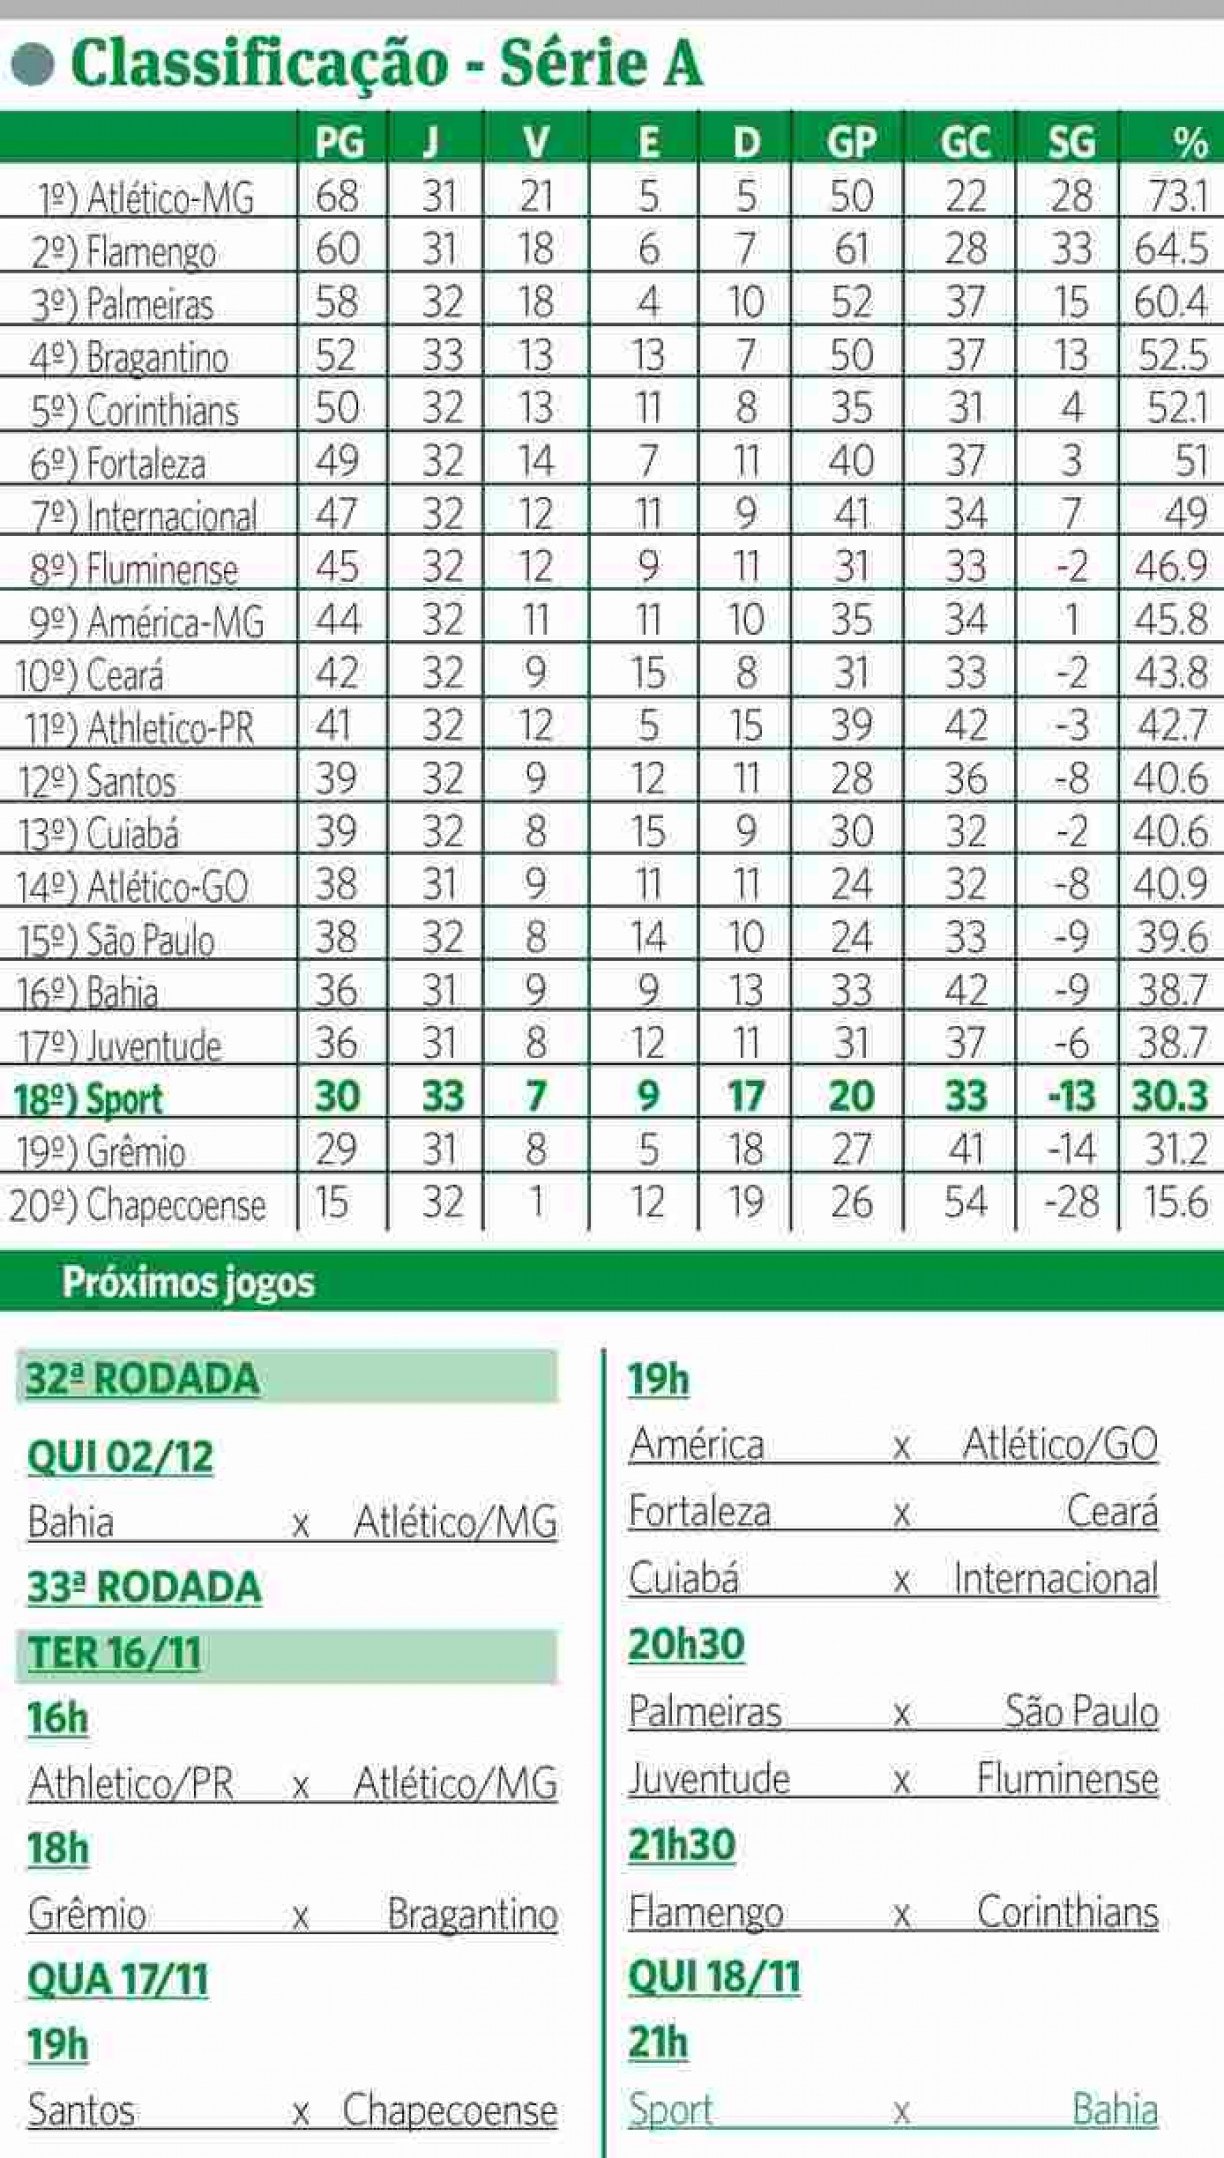 SportsCenterBR - 📊 OLHA A TABELA AÍ! Se liga na classificação atualizada  do Brasileirão após os jogos de domingo! Lembrando que ainda faltam dois  jogos nesta segunda-feira!